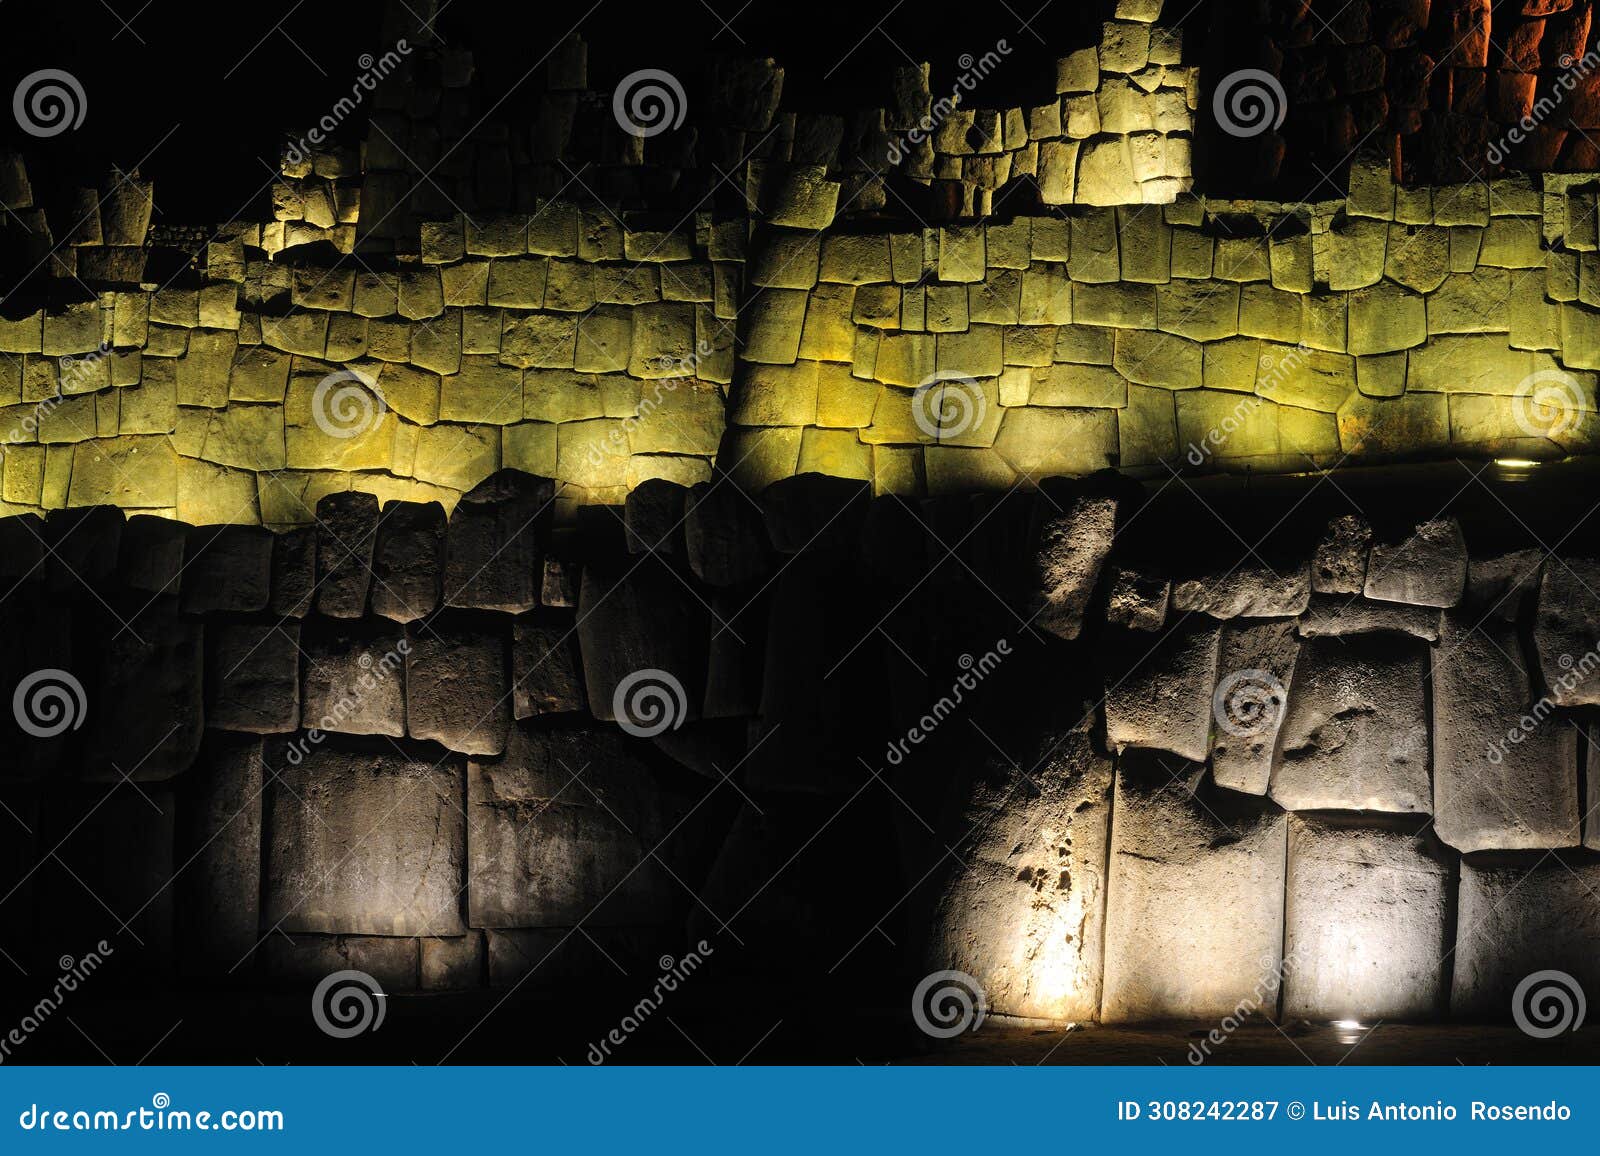 sacsayhuaman, ruinas incas en cusco, per